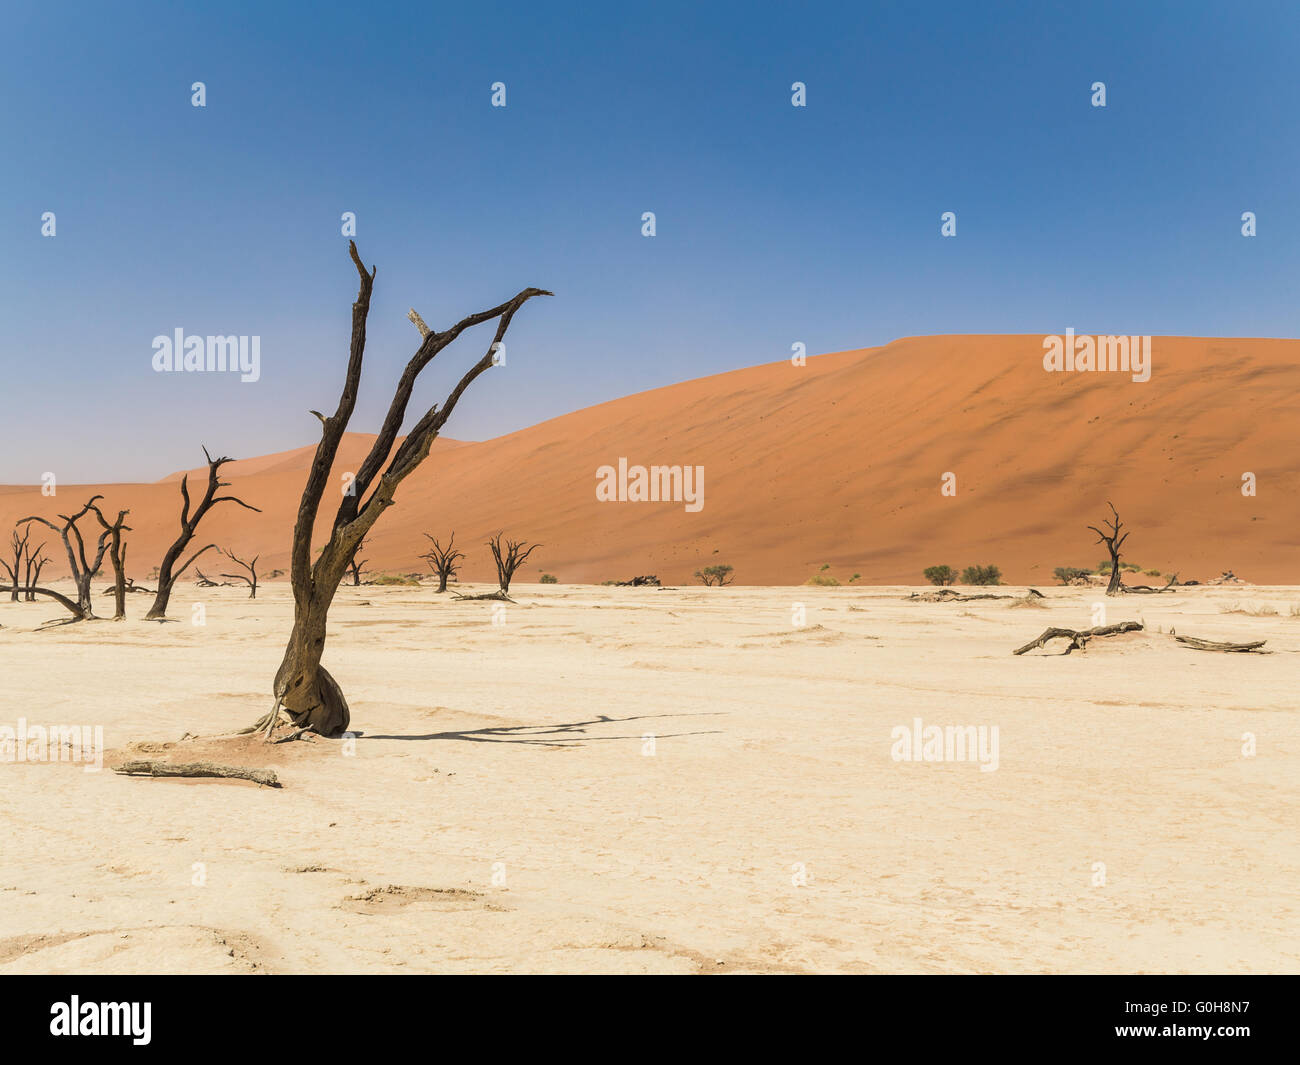 Les arbres morts debout dans Deadvlei, la Namibie. Paysage désertique. Banque D'Images